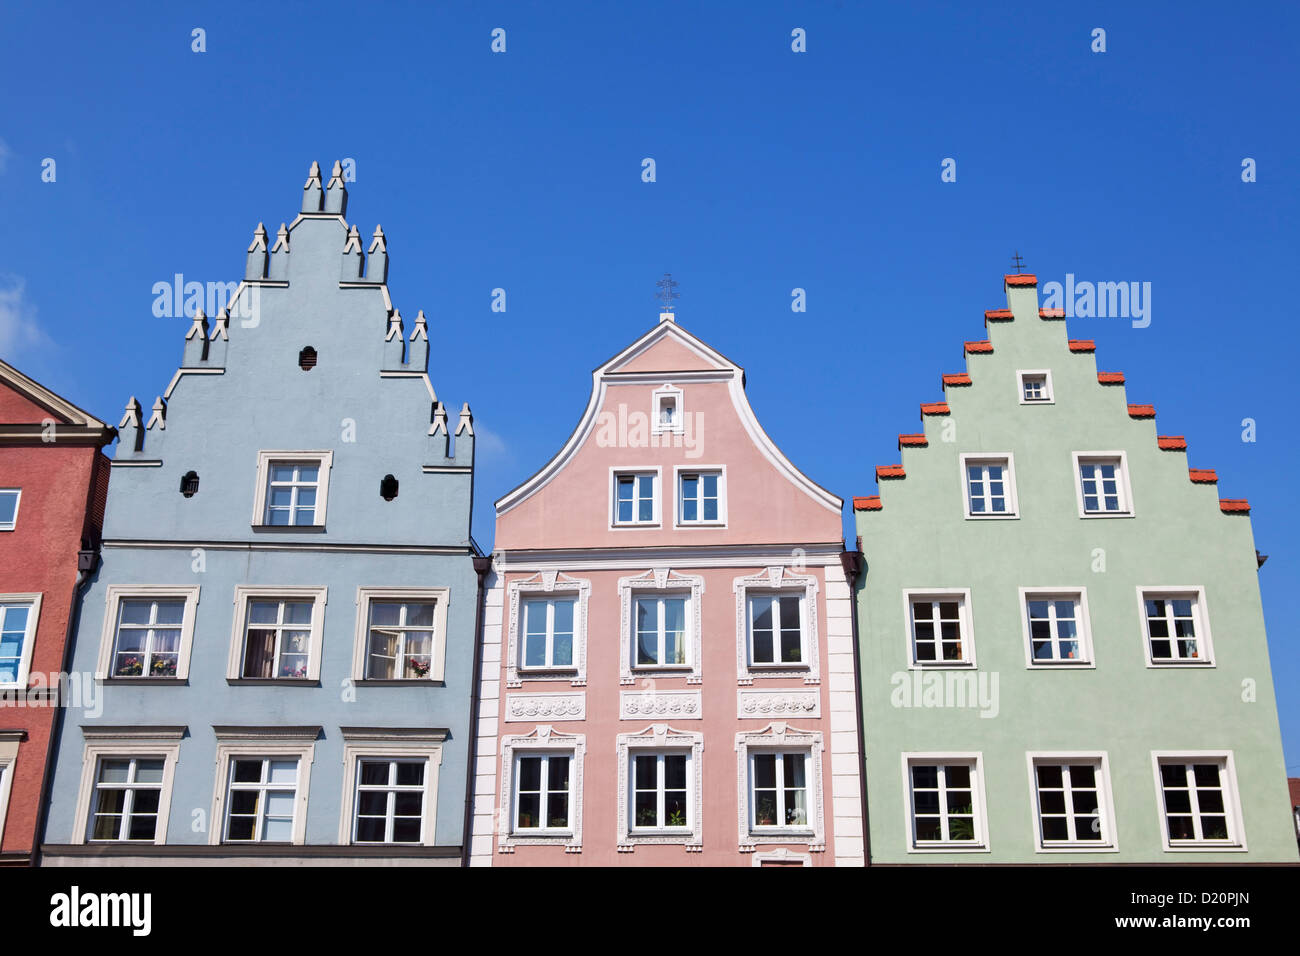 Historic facades along Neustadt Lane, Landshut, Lower Bavaria, Bavaria, Germany, Europe Stock Photo